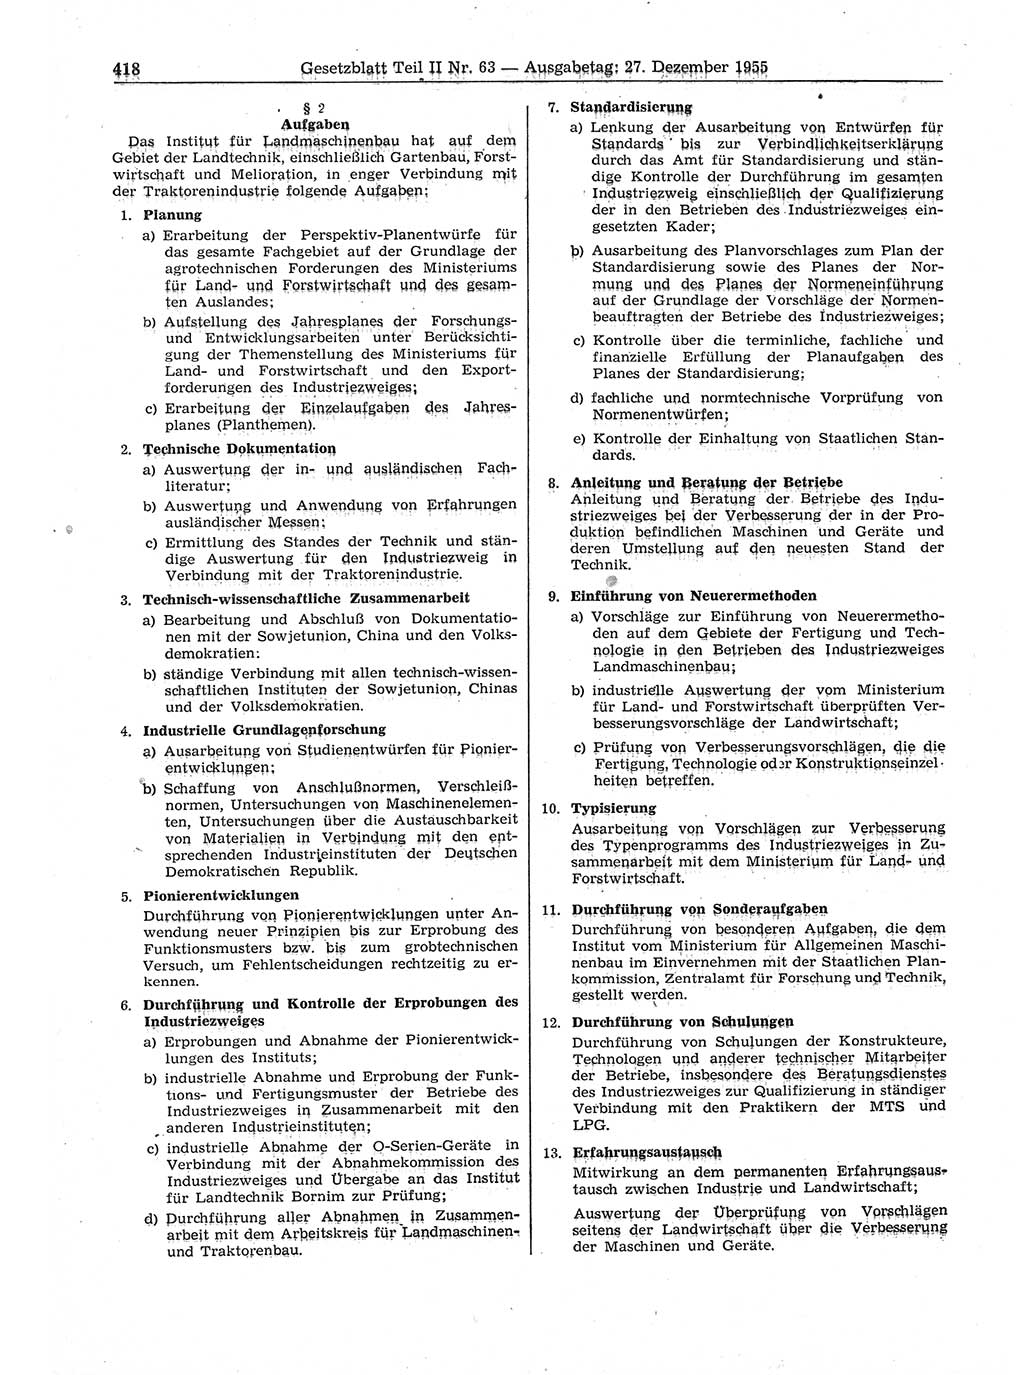 Gesetzblatt (GBl.) der Deutschen Demokratischen Republik (DDR) Teil ⅠⅠ 1955, Seite 418 (GBl. DDR ⅠⅠ 1955, S. 418)